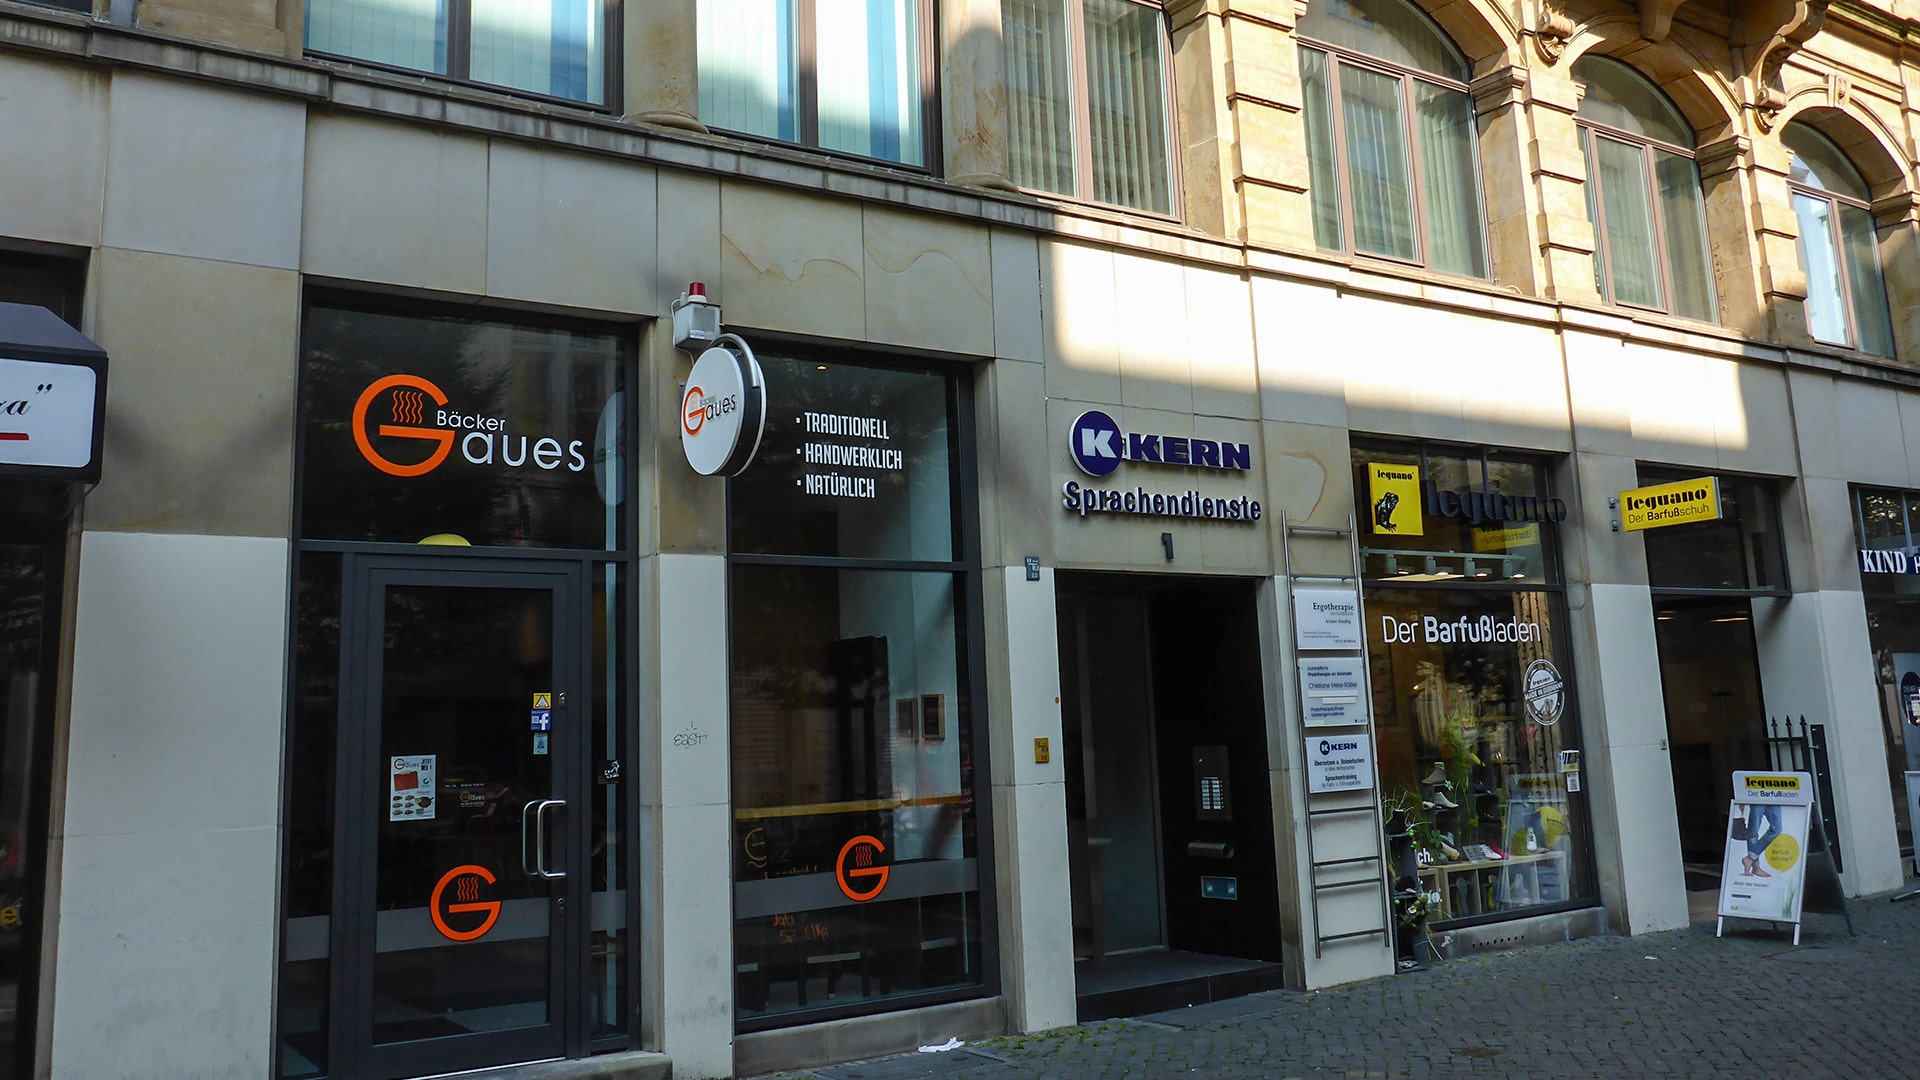 Biuro tłumaczeń w Brunszwiku